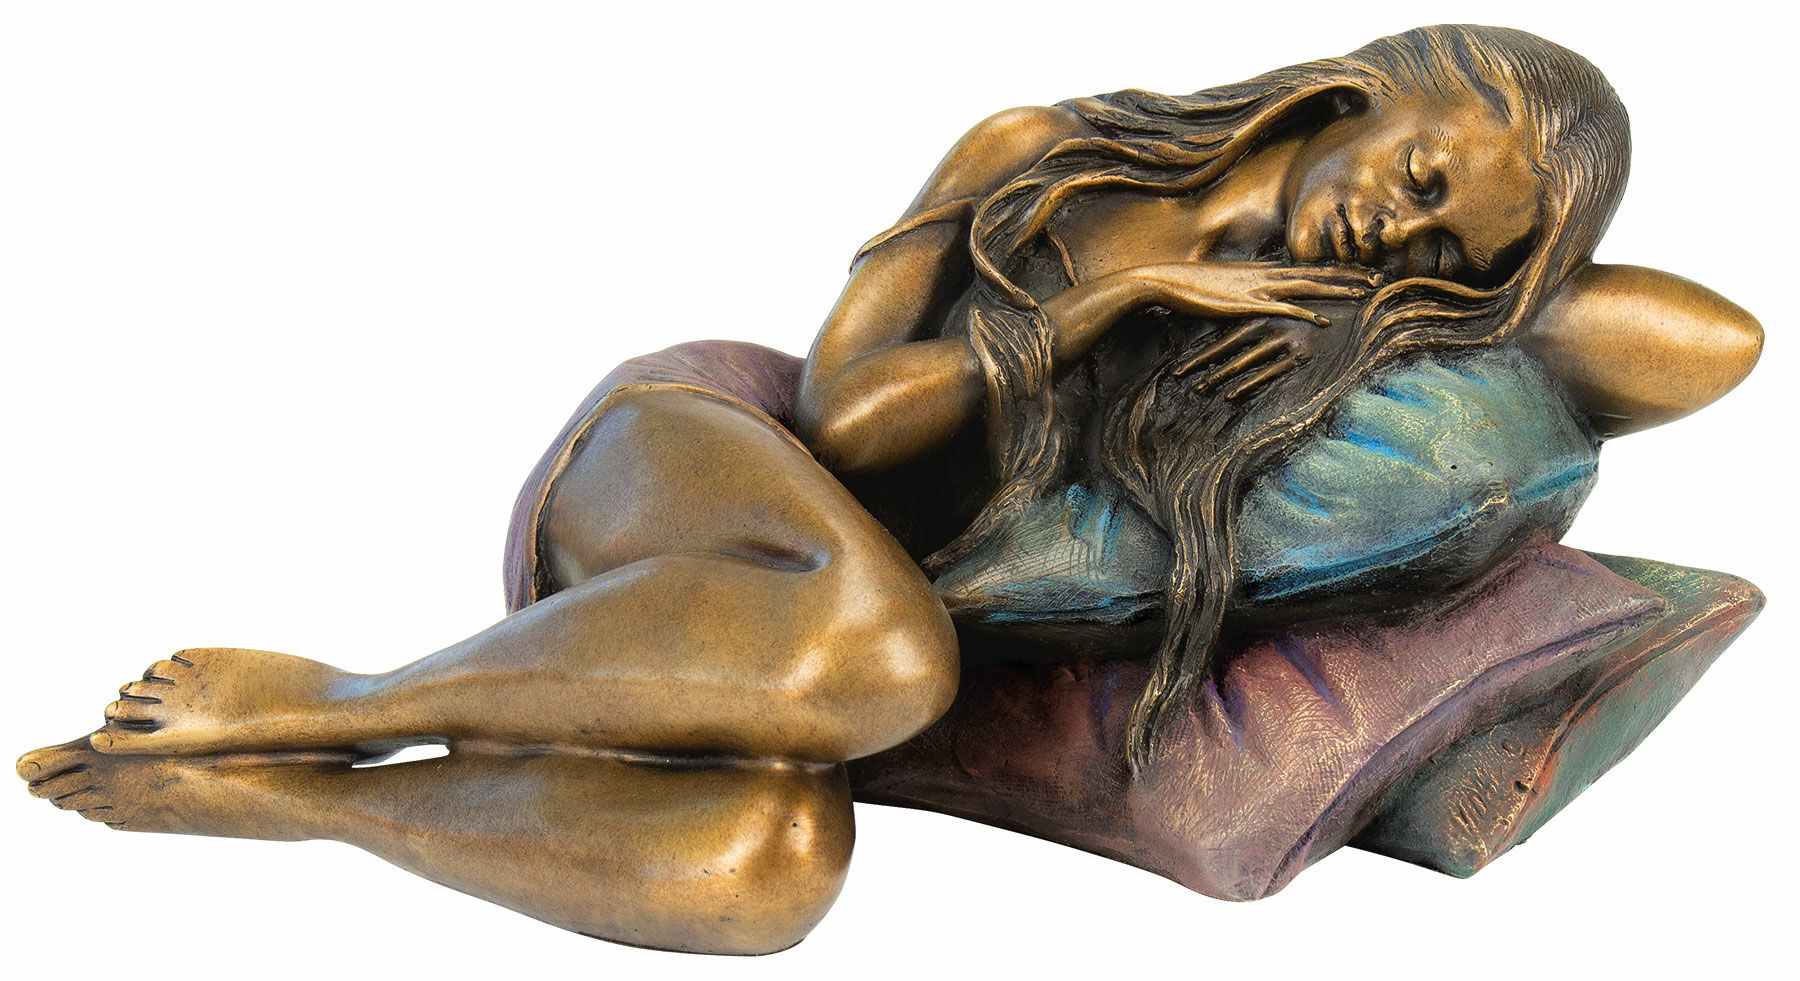 Sculpture "Resting Girl", bronze by Manel Vidal